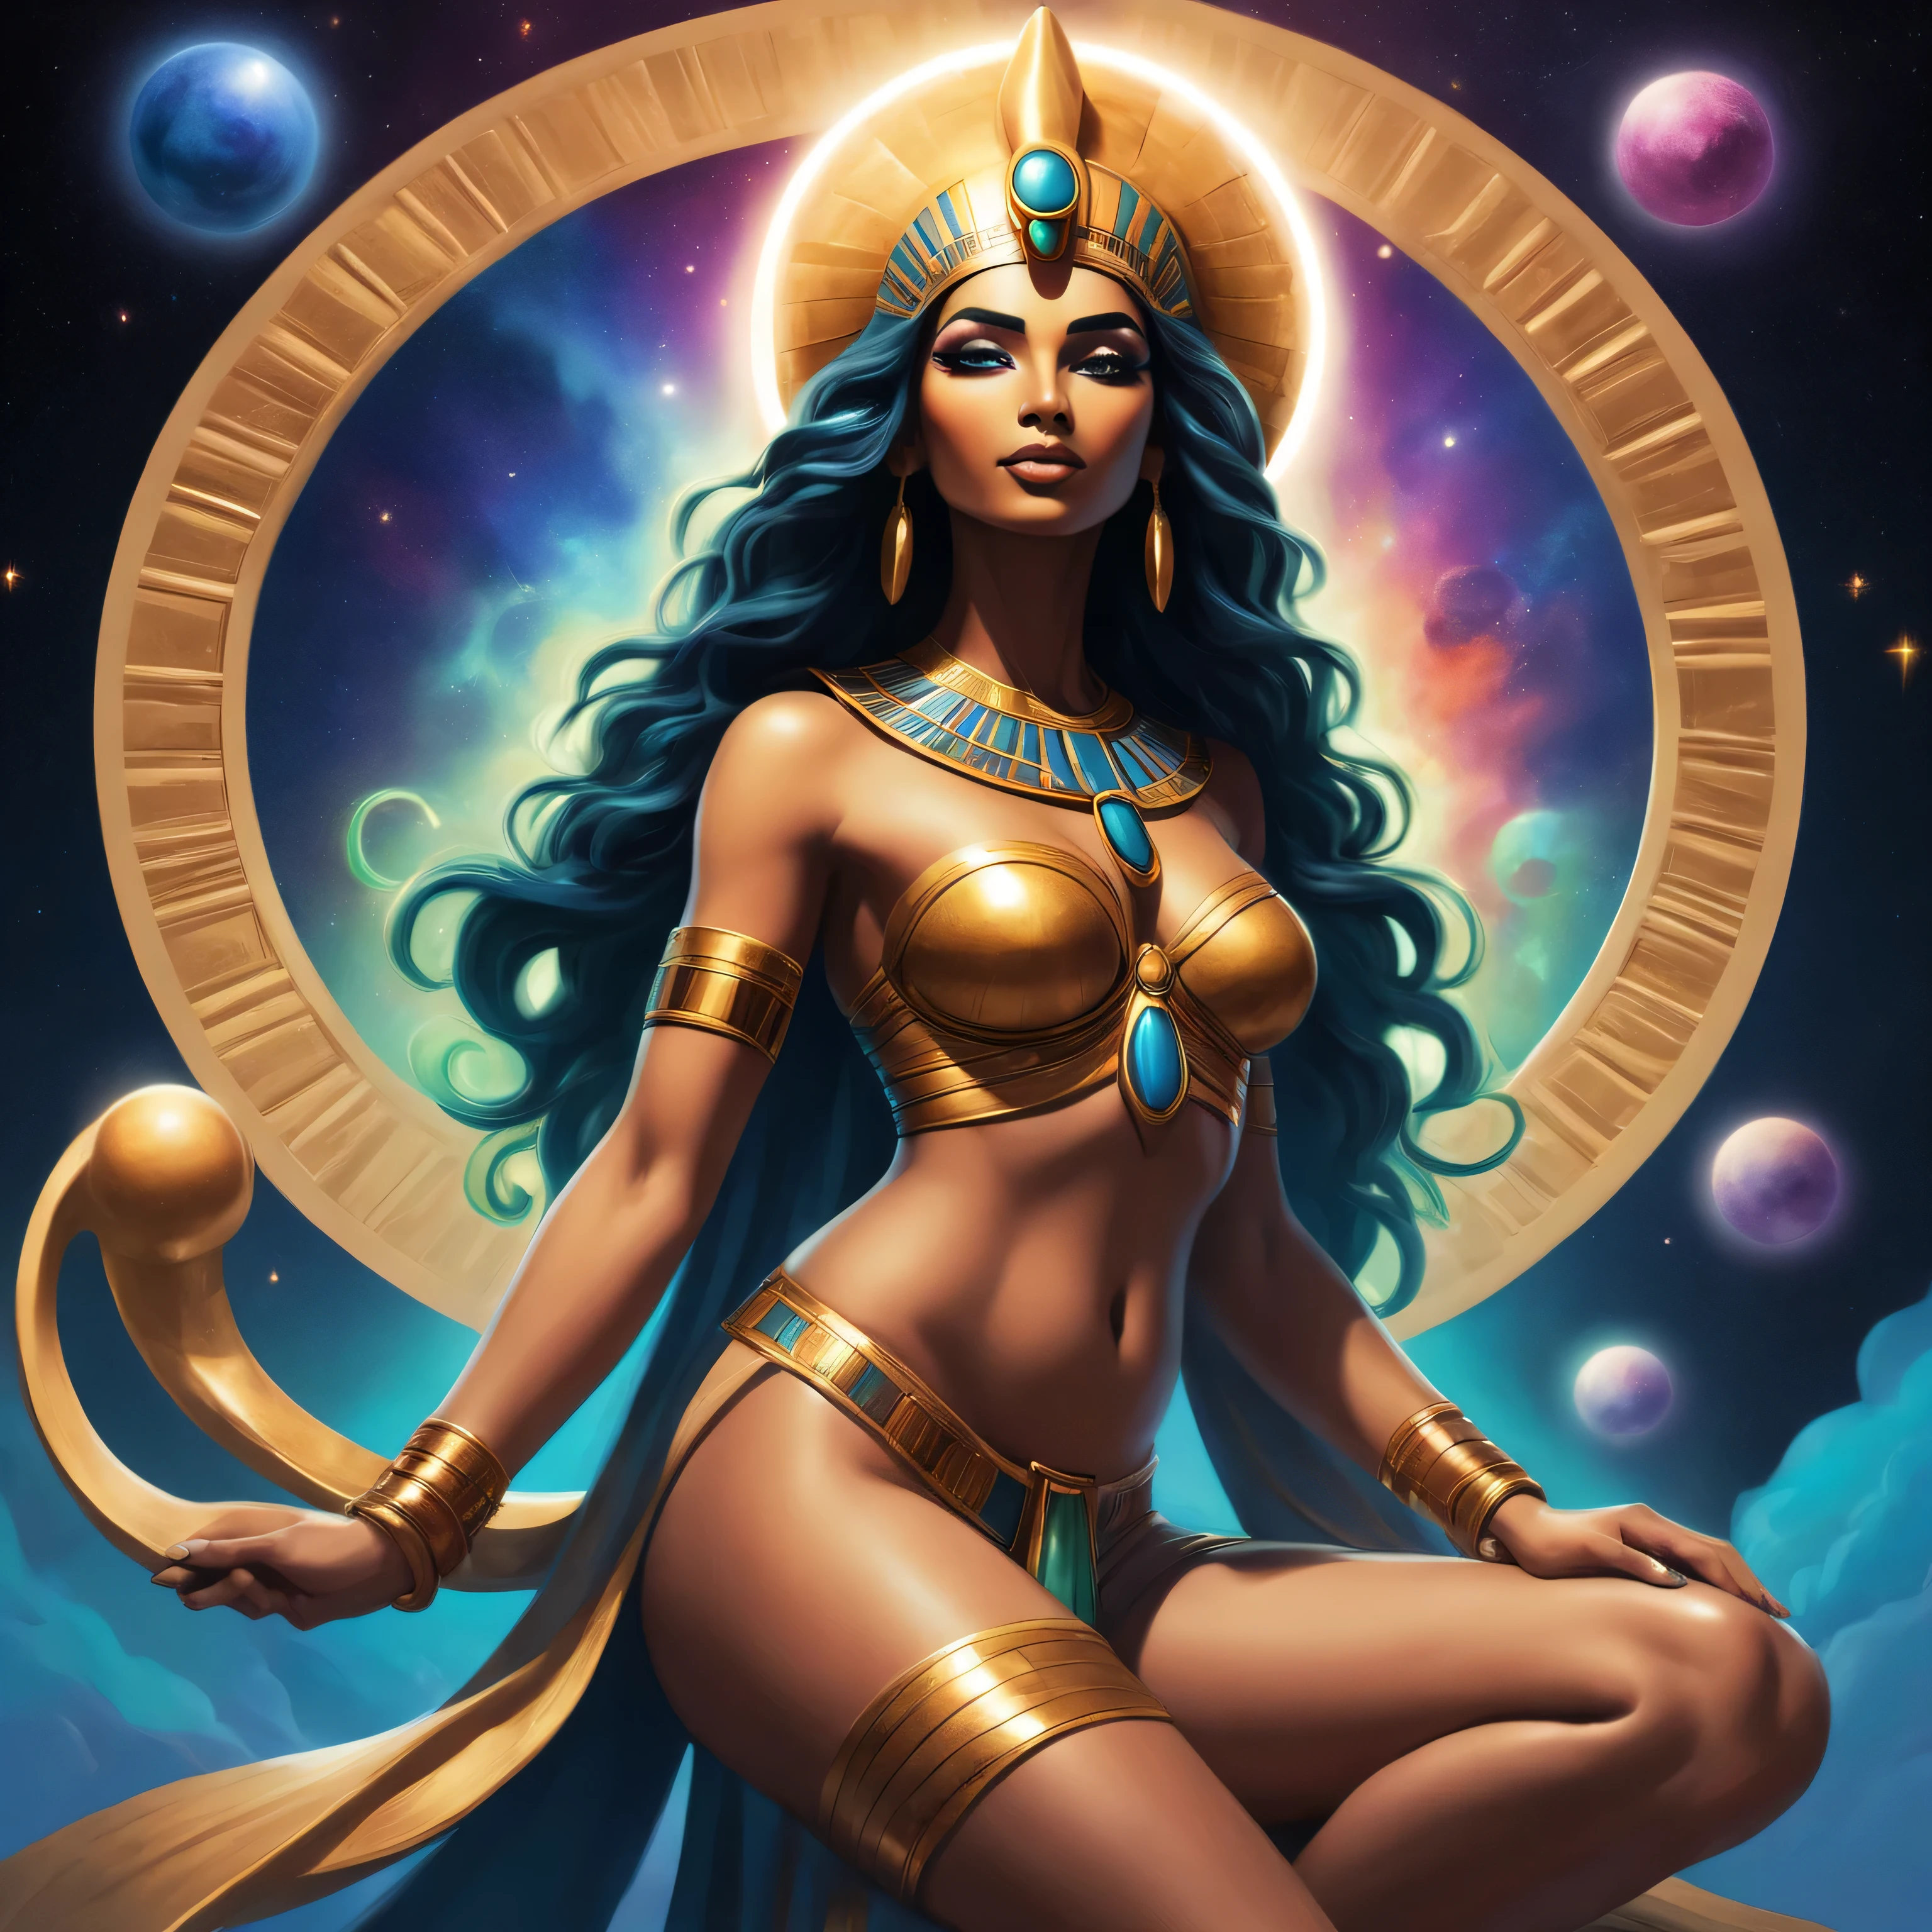 В стиле поп-арт, создайте яркое и энергичное изображение египетской богини Нут.. Ее тело вытянуто, а конечности вытянуты до бесконечности., воплощение концепции бесконечной вселенной. Ее постоянное рождение и смерть создает светящуюся ауру., окружая ее мягким сиянием. Используйте элементы аниме и комиксов, чтобы добавить преувеличенных выражений и динамичных движений., усиление ее силы богини. Применение биолюминесцентного стиля, включить светящиеся элементы по всему ее телу и окружающему космосу, происходящие от рождающейся и умирающей богини, создание завораживающего и потустороннего присутствия.